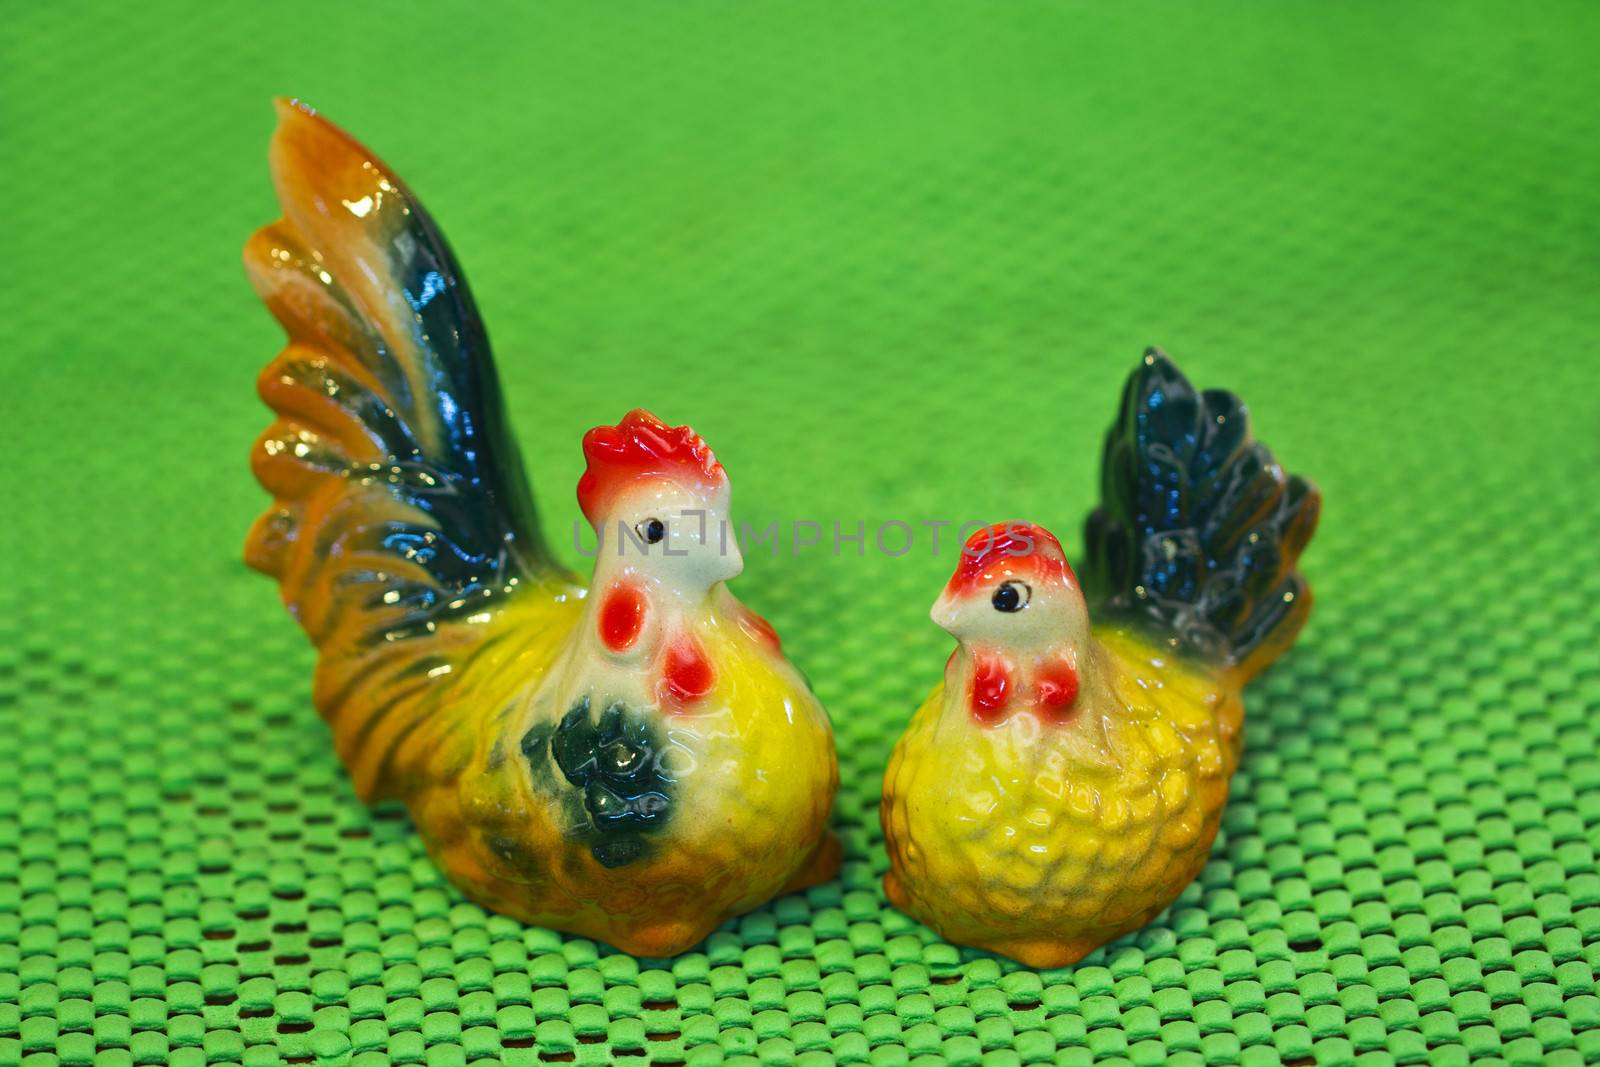 Cute ceramic chicken on green background, in Thailand.